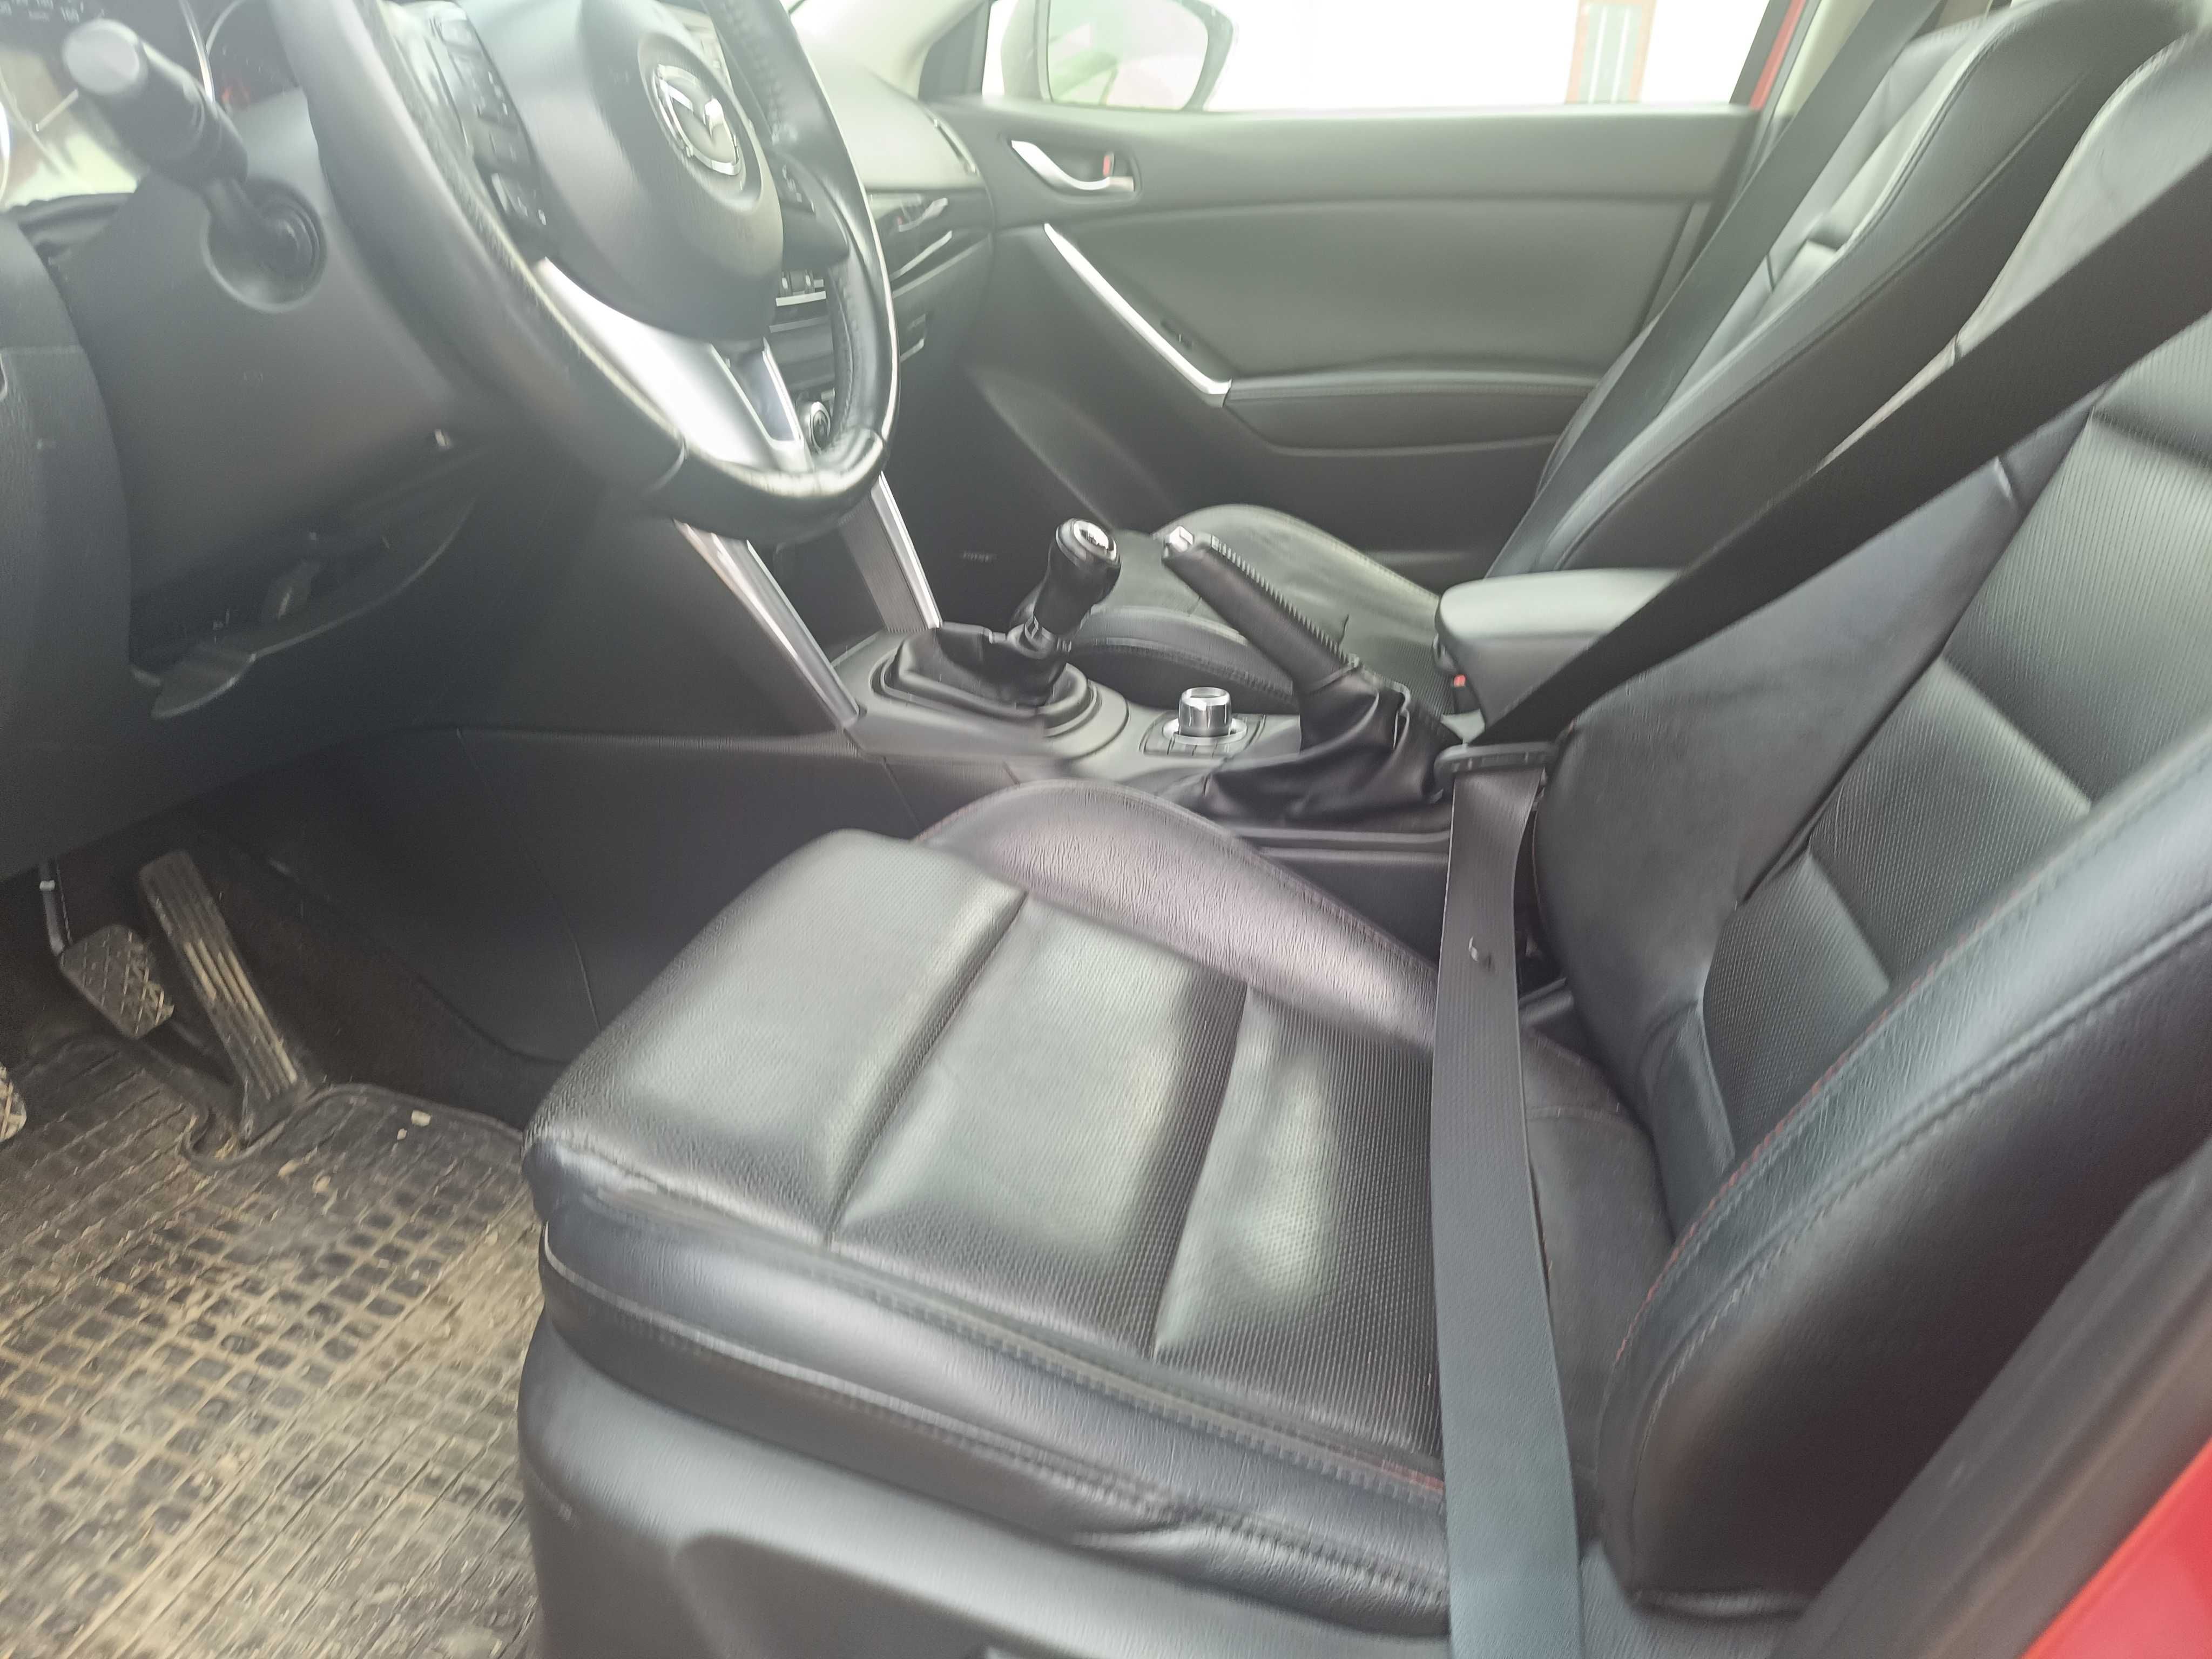 Interior complet din piele Mazda CX-5 2012 2017 model Europa